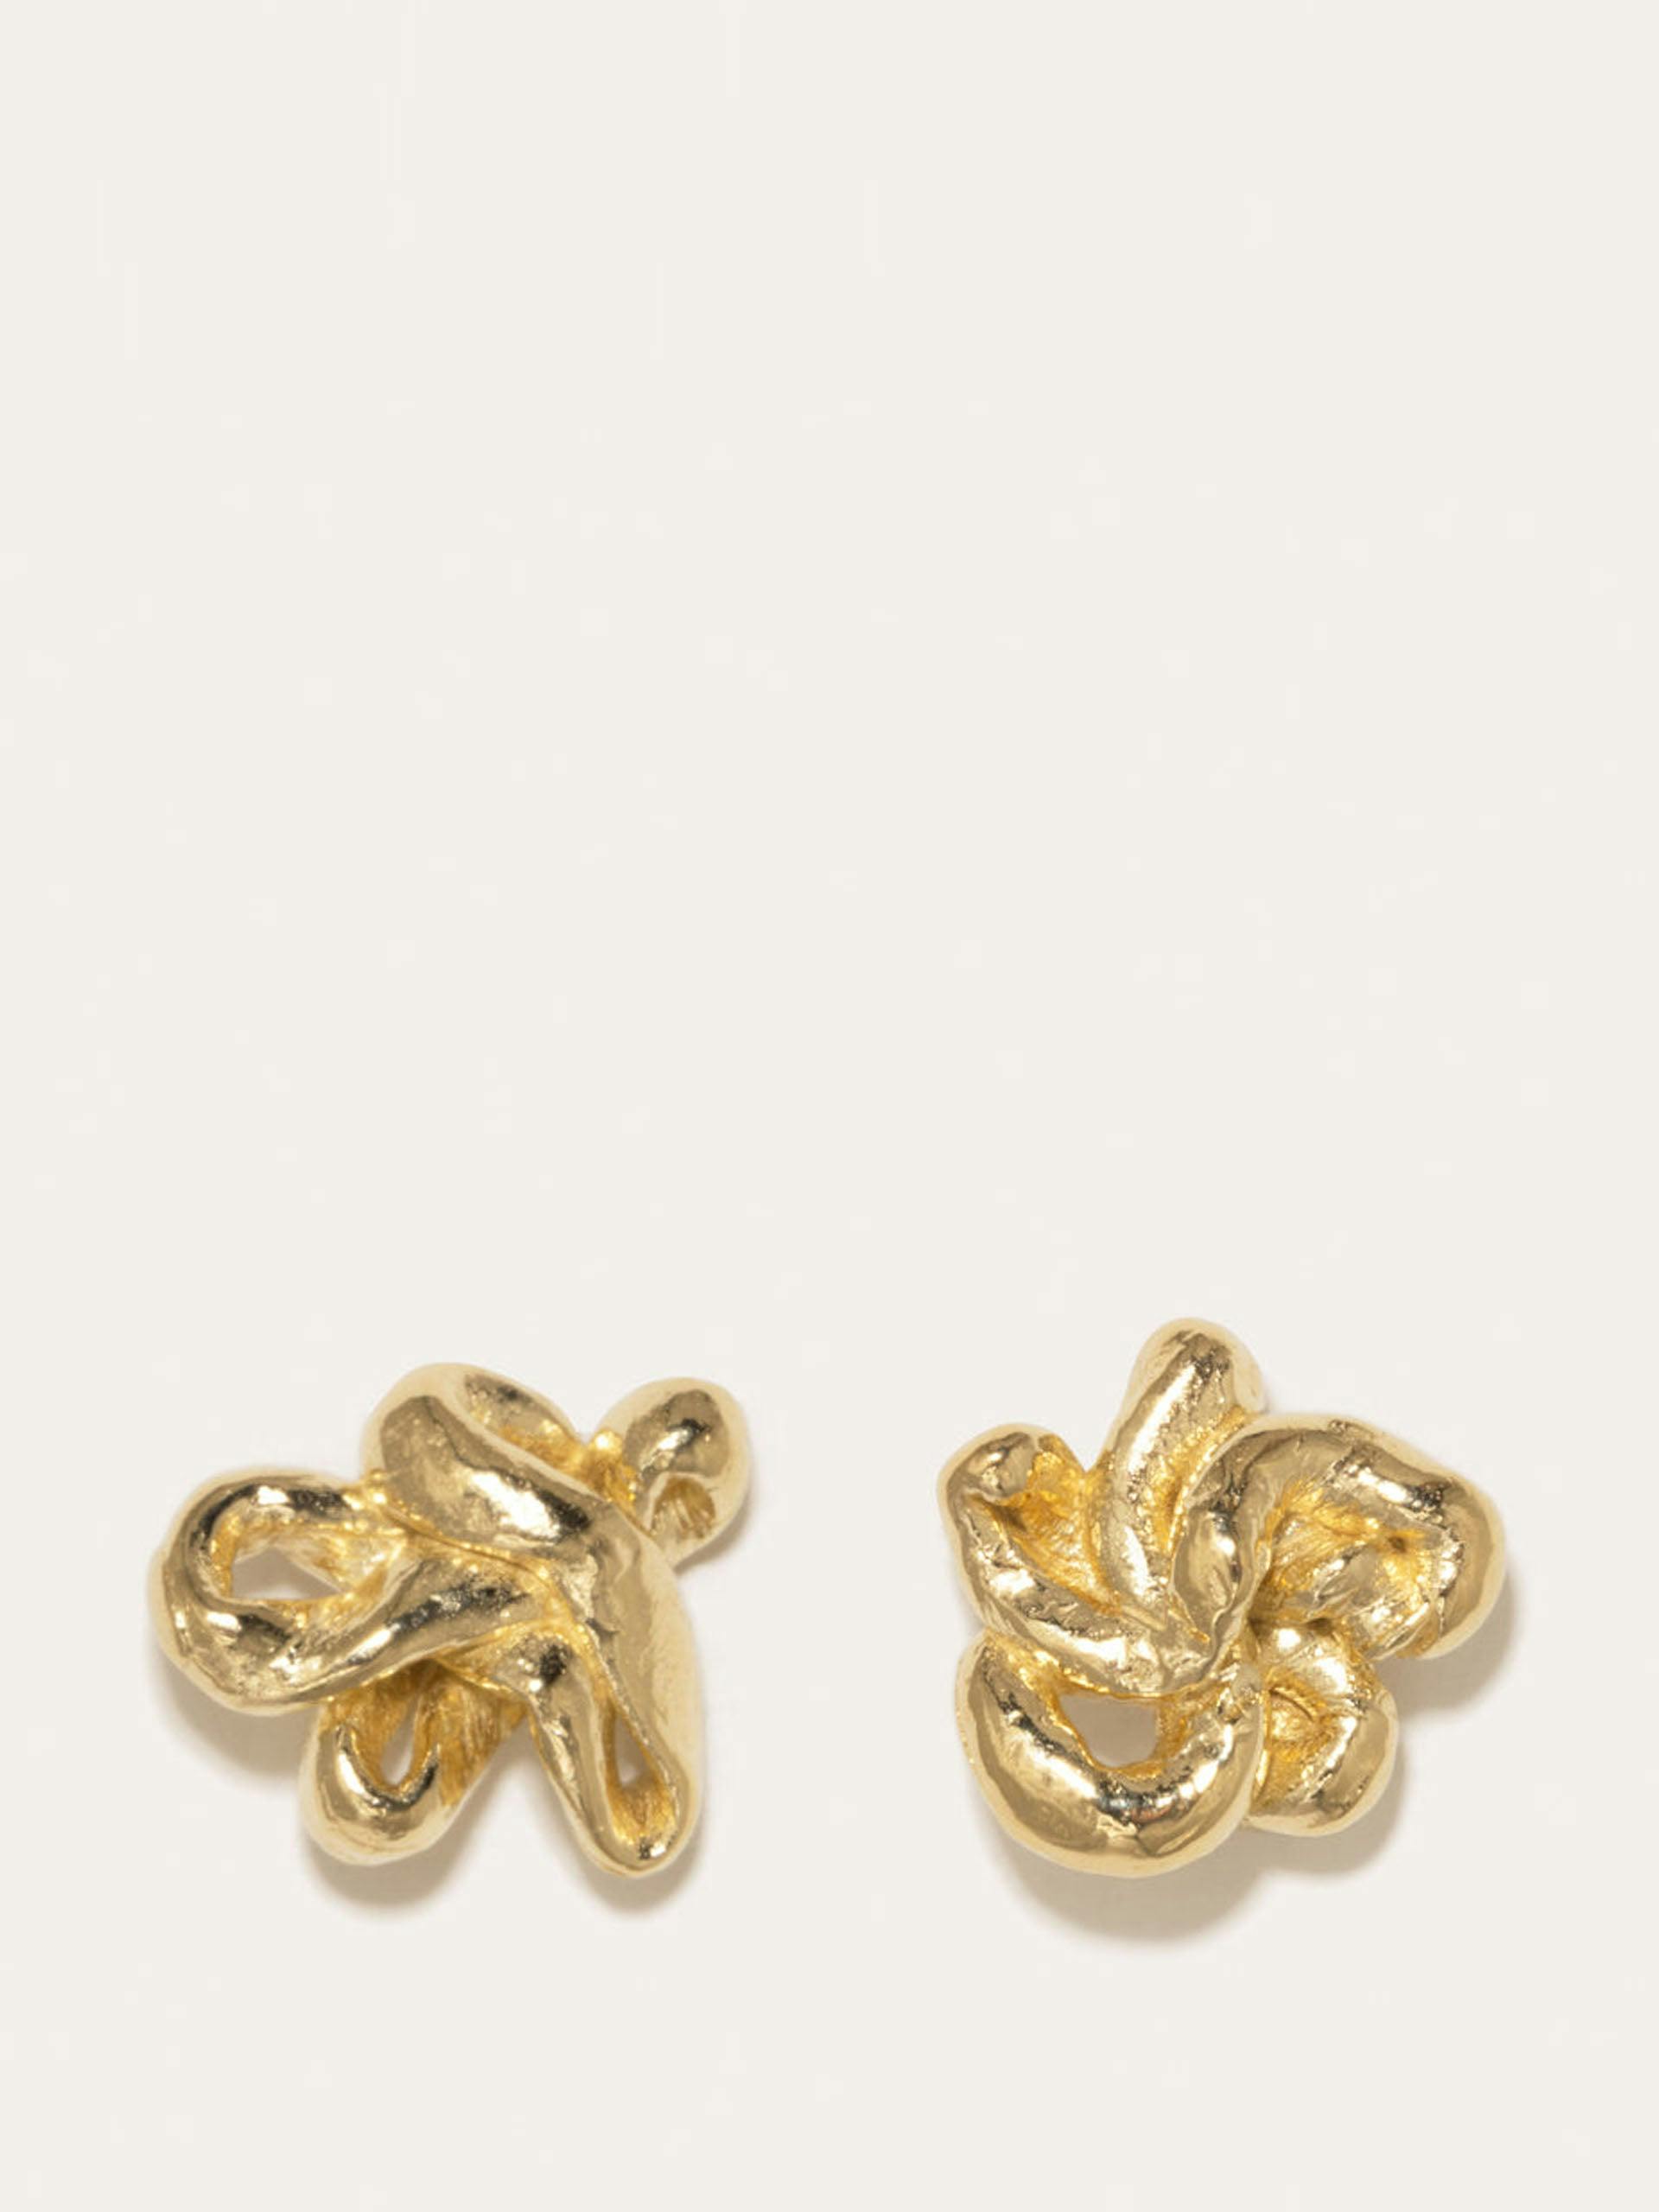 Sloppy Swirls gold vermeil earrings